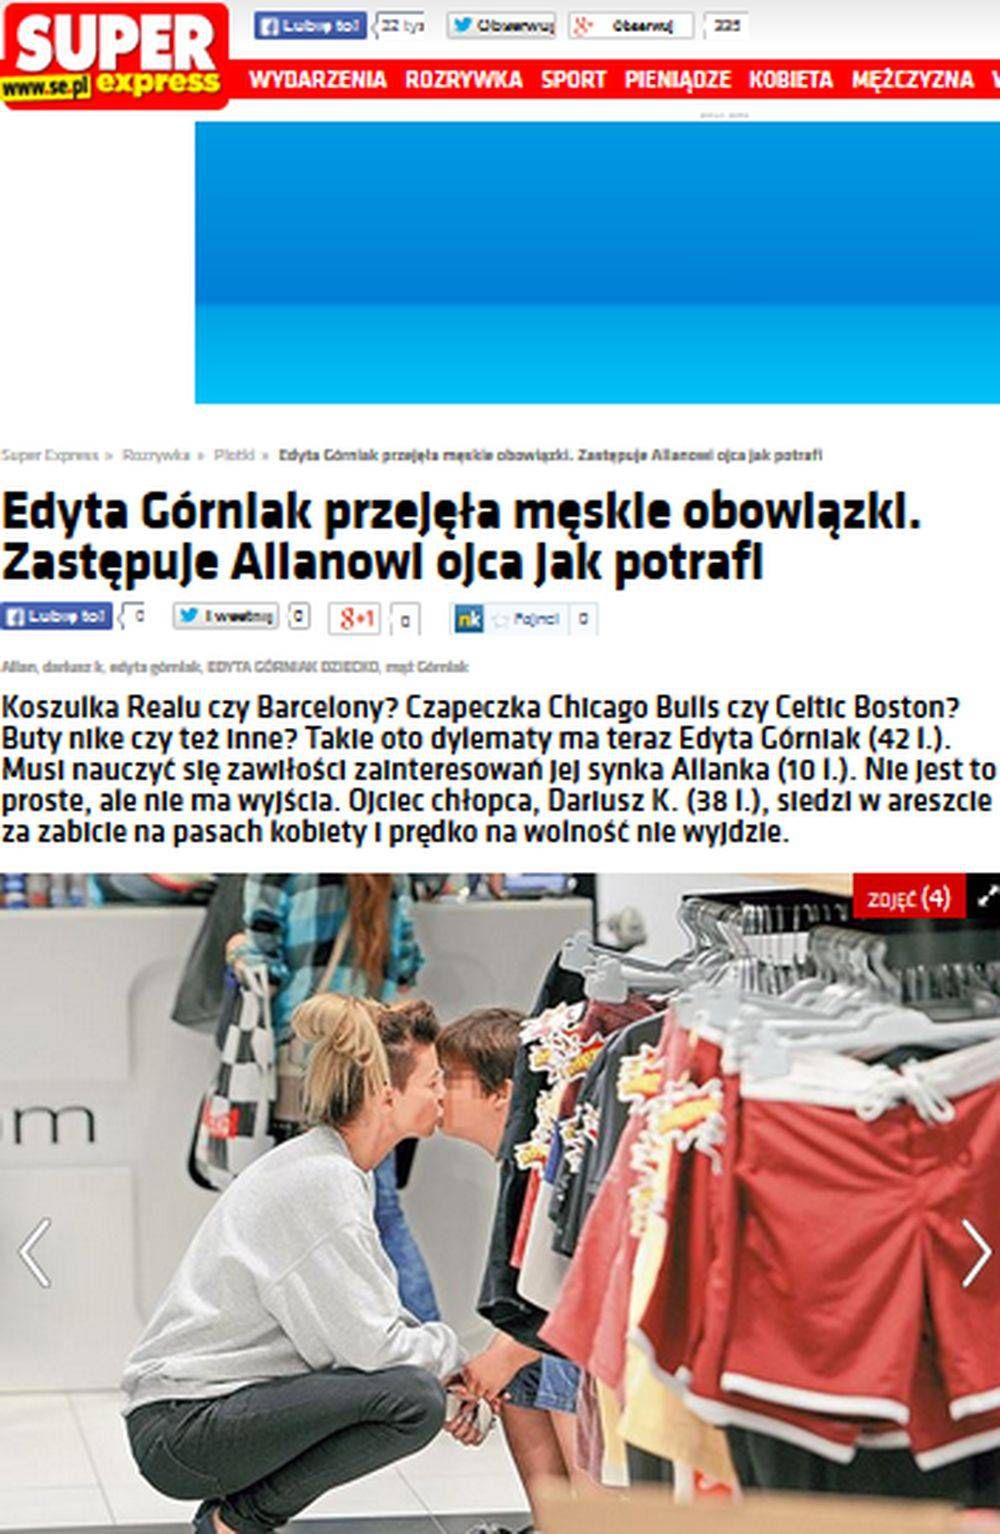 Fotografia: screen z http://www.se.pl/rozrywka/plotki/edyta-gorniak-przejela-meskie-obowiazki-zastepuje-allanowi-ojca-jak-potrafi_416774.html